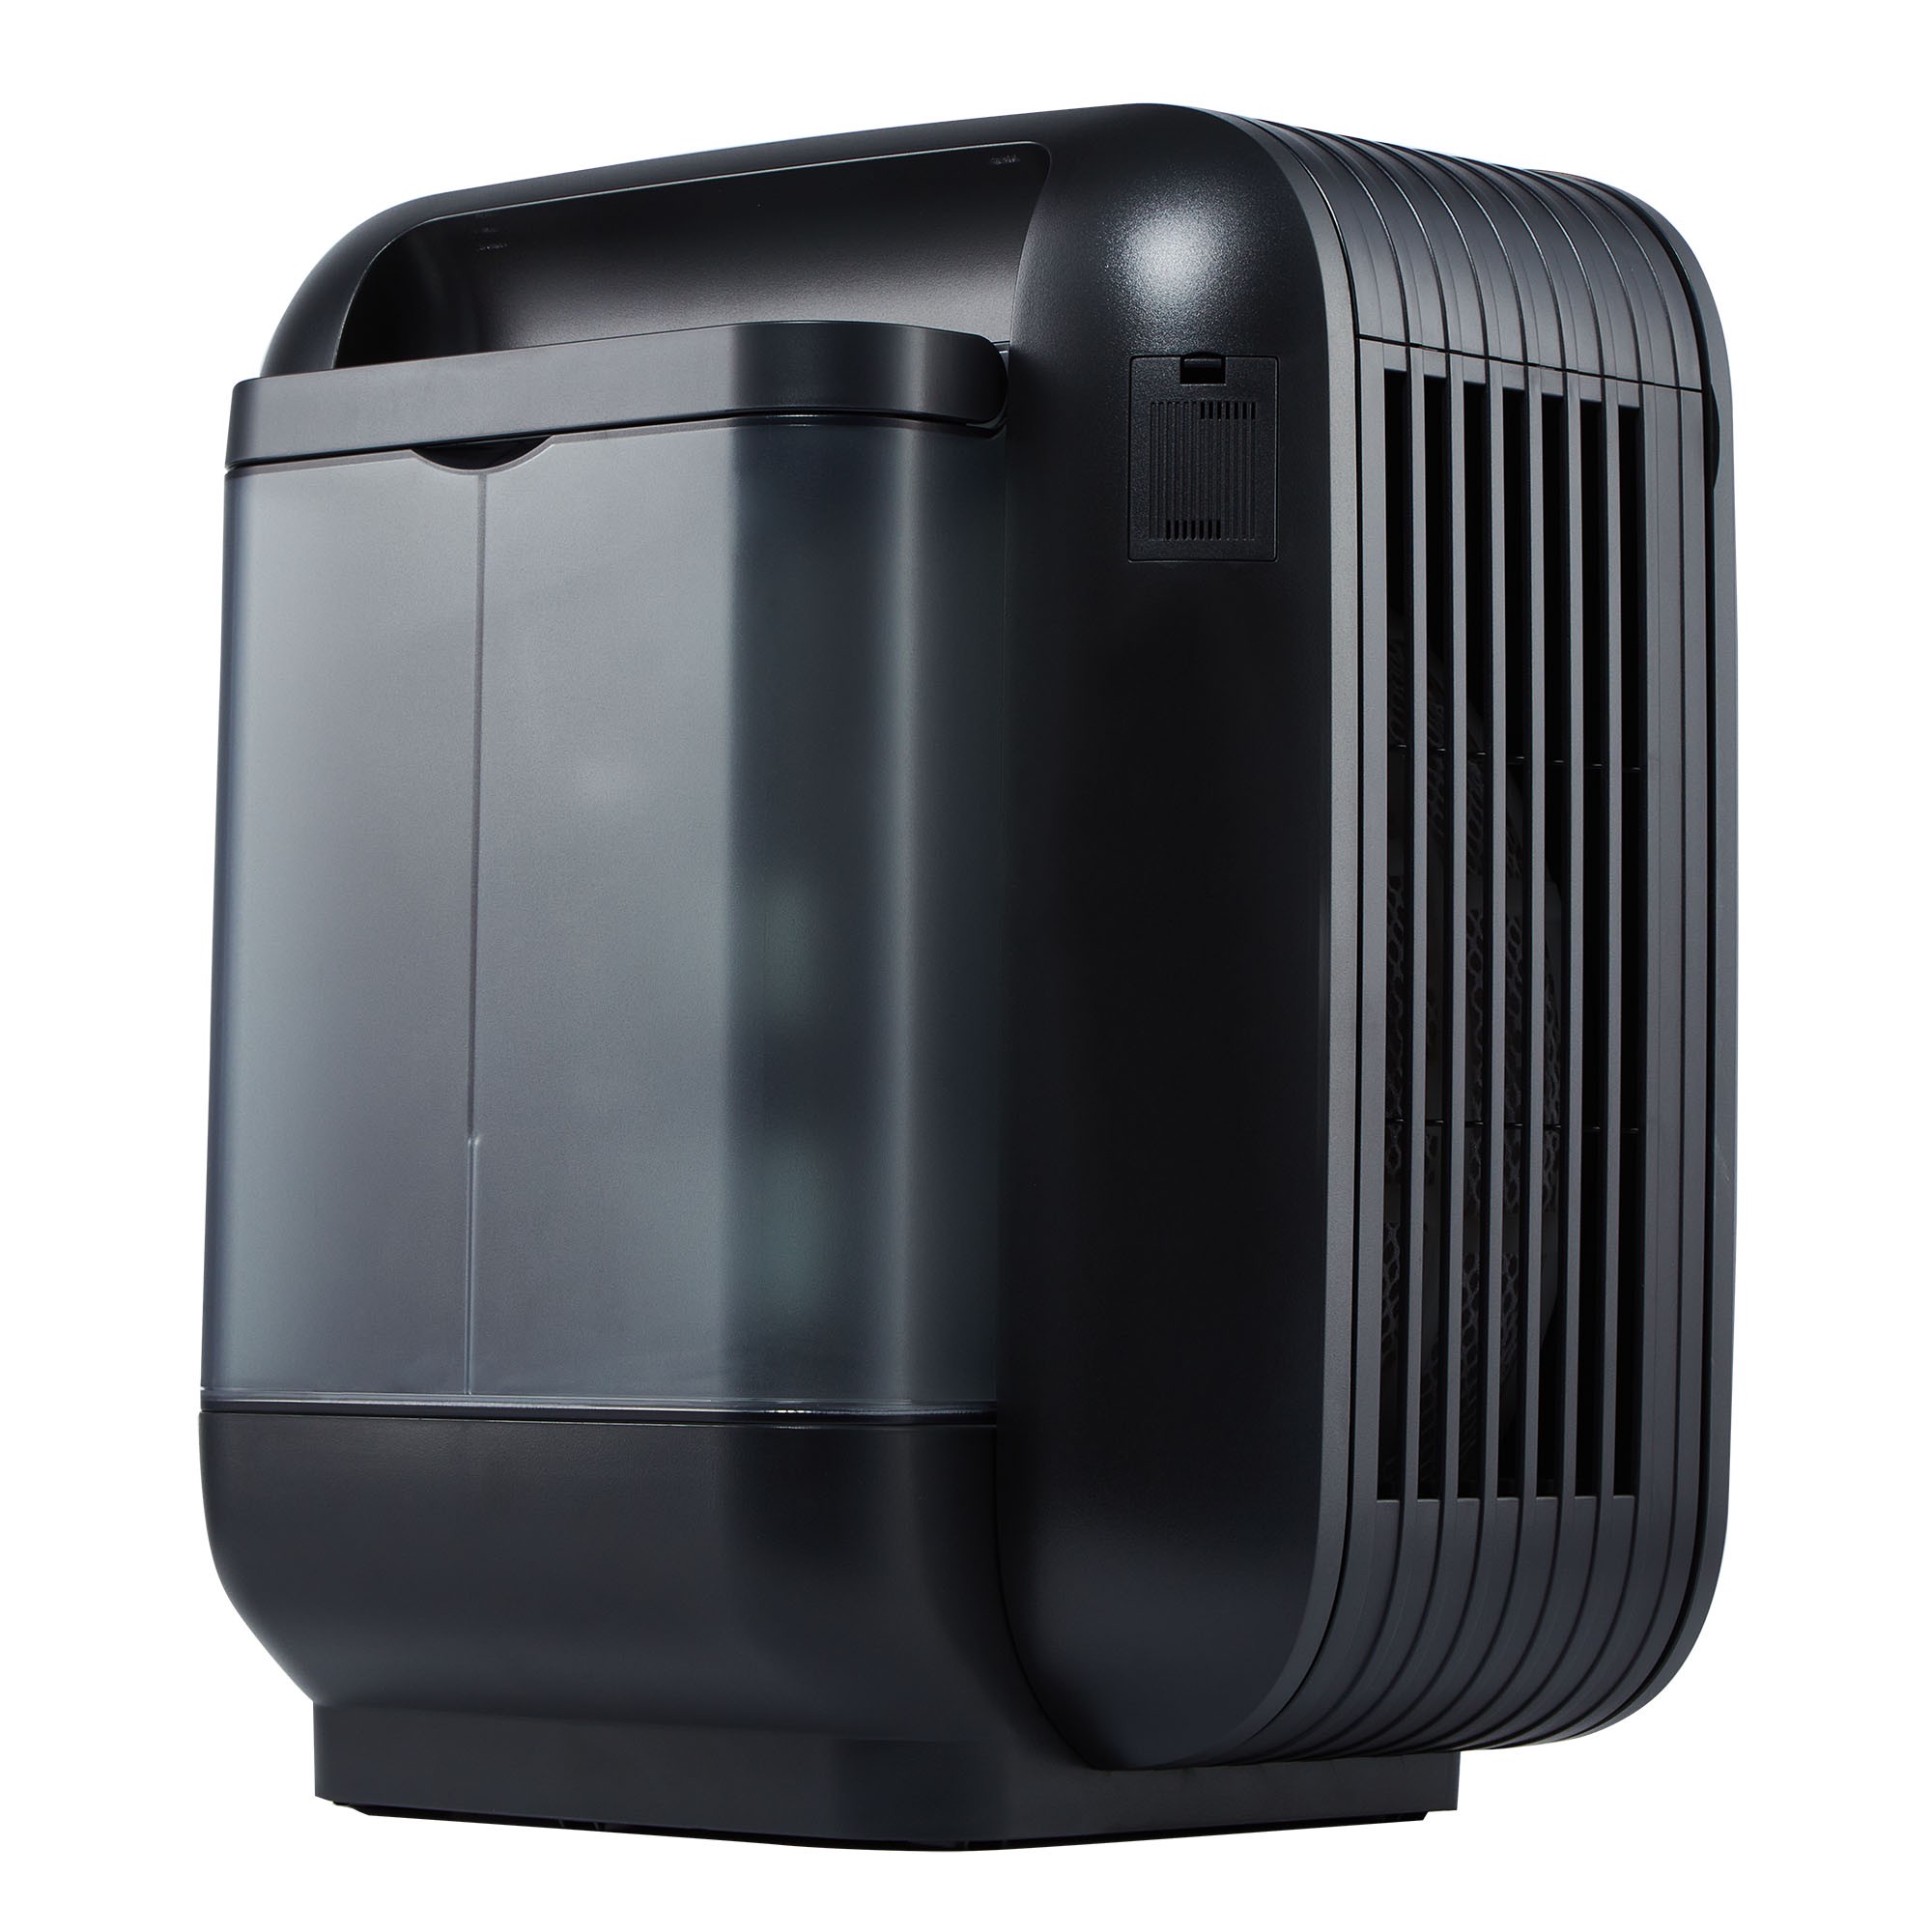 Климатический комплекс Boneco H700 (воздухоочиститель+увлажнитель+ароматизатор) чёрный - фото 10